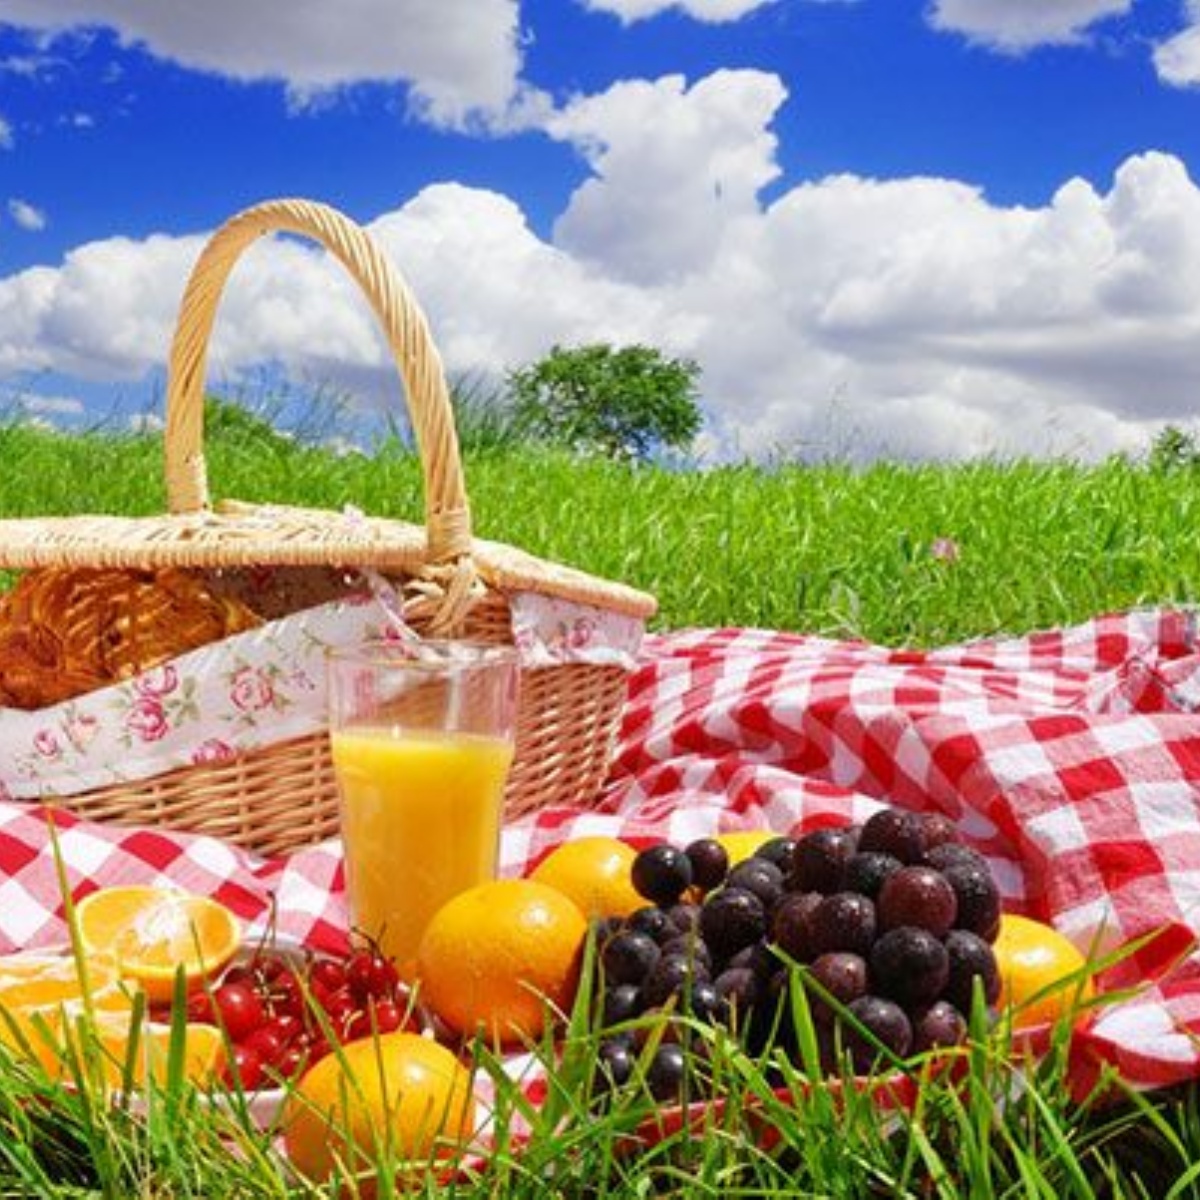 Пикник воды и хлеба. Международный день пикника (International Picnic Day). Еда на природе. Выходные на природе. Летний пикник на природе.